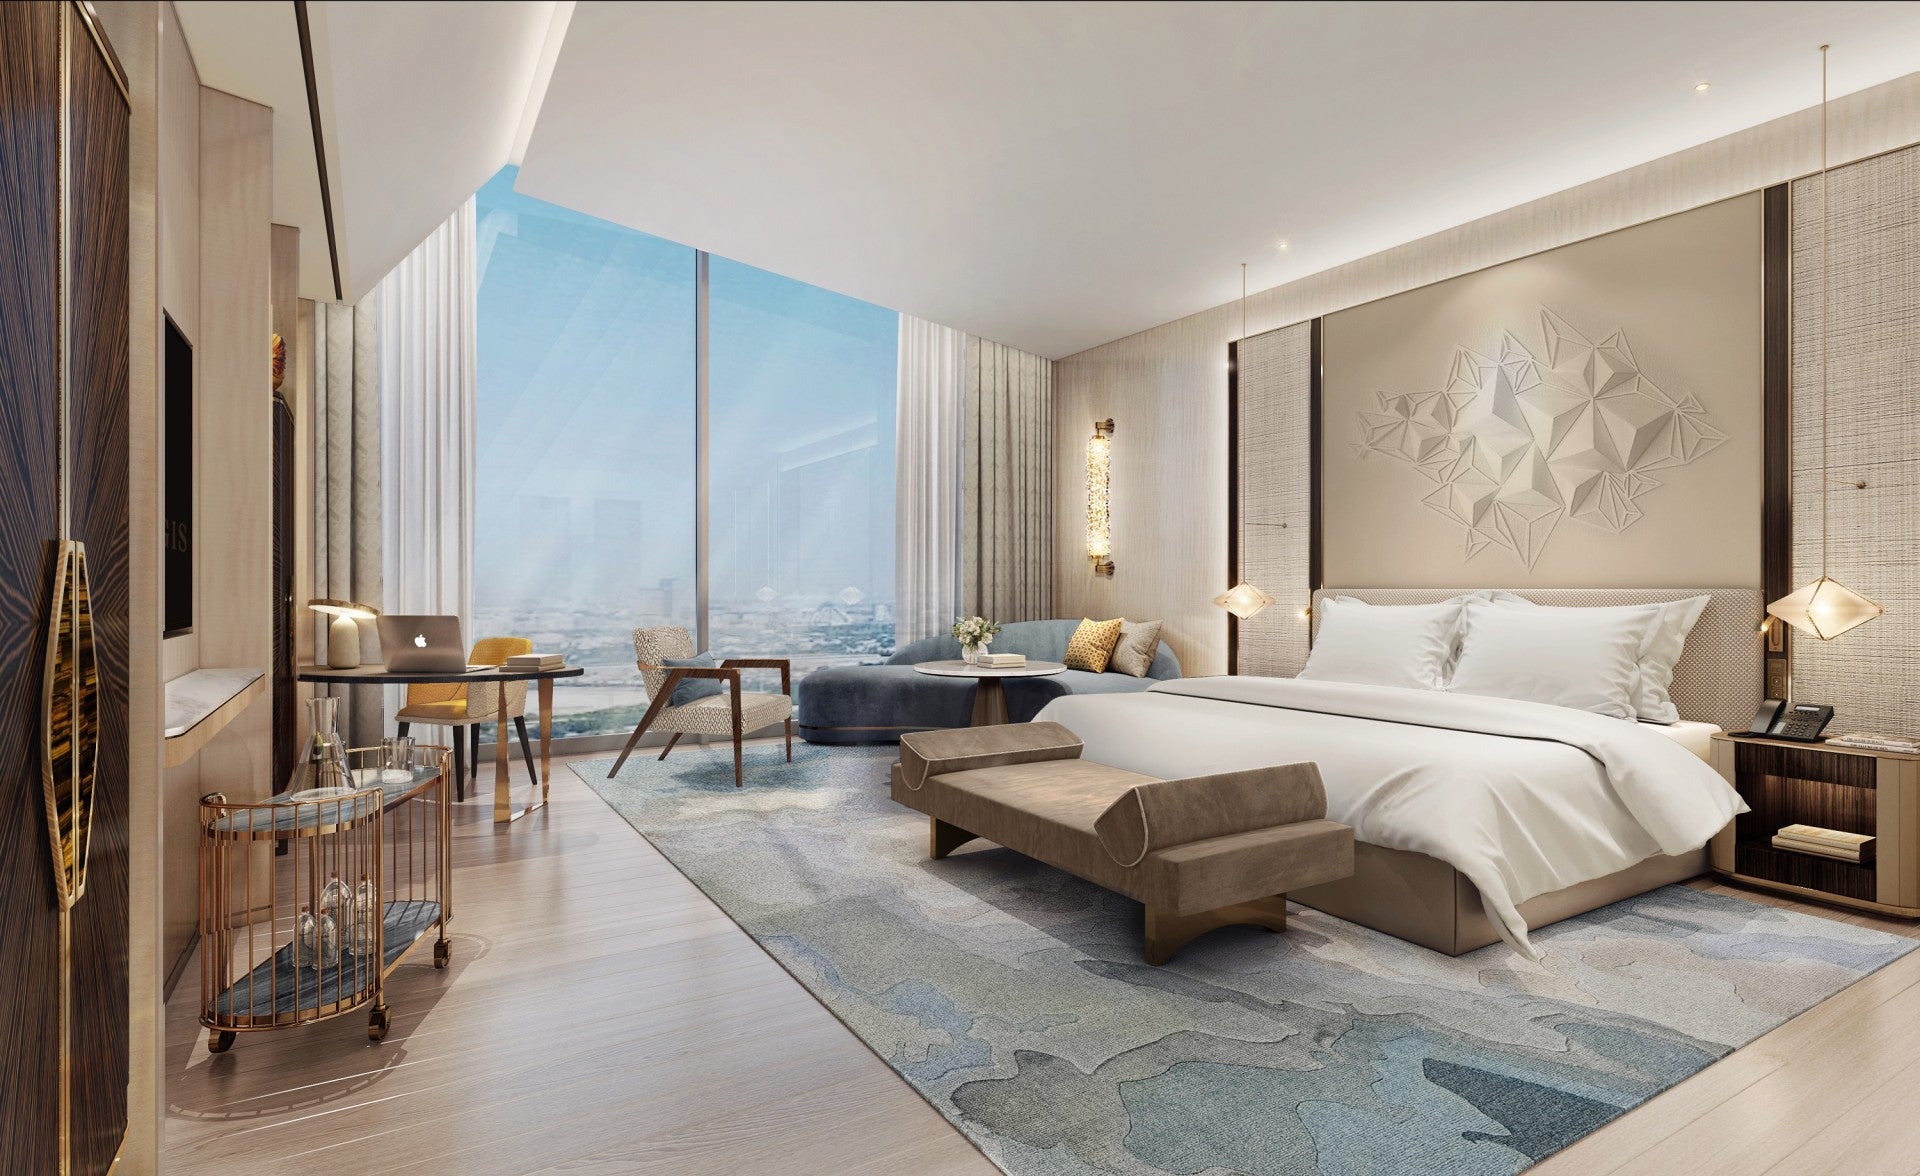 Marriott, Sela Sport to develop two luxury hotels in Saudi Arabia